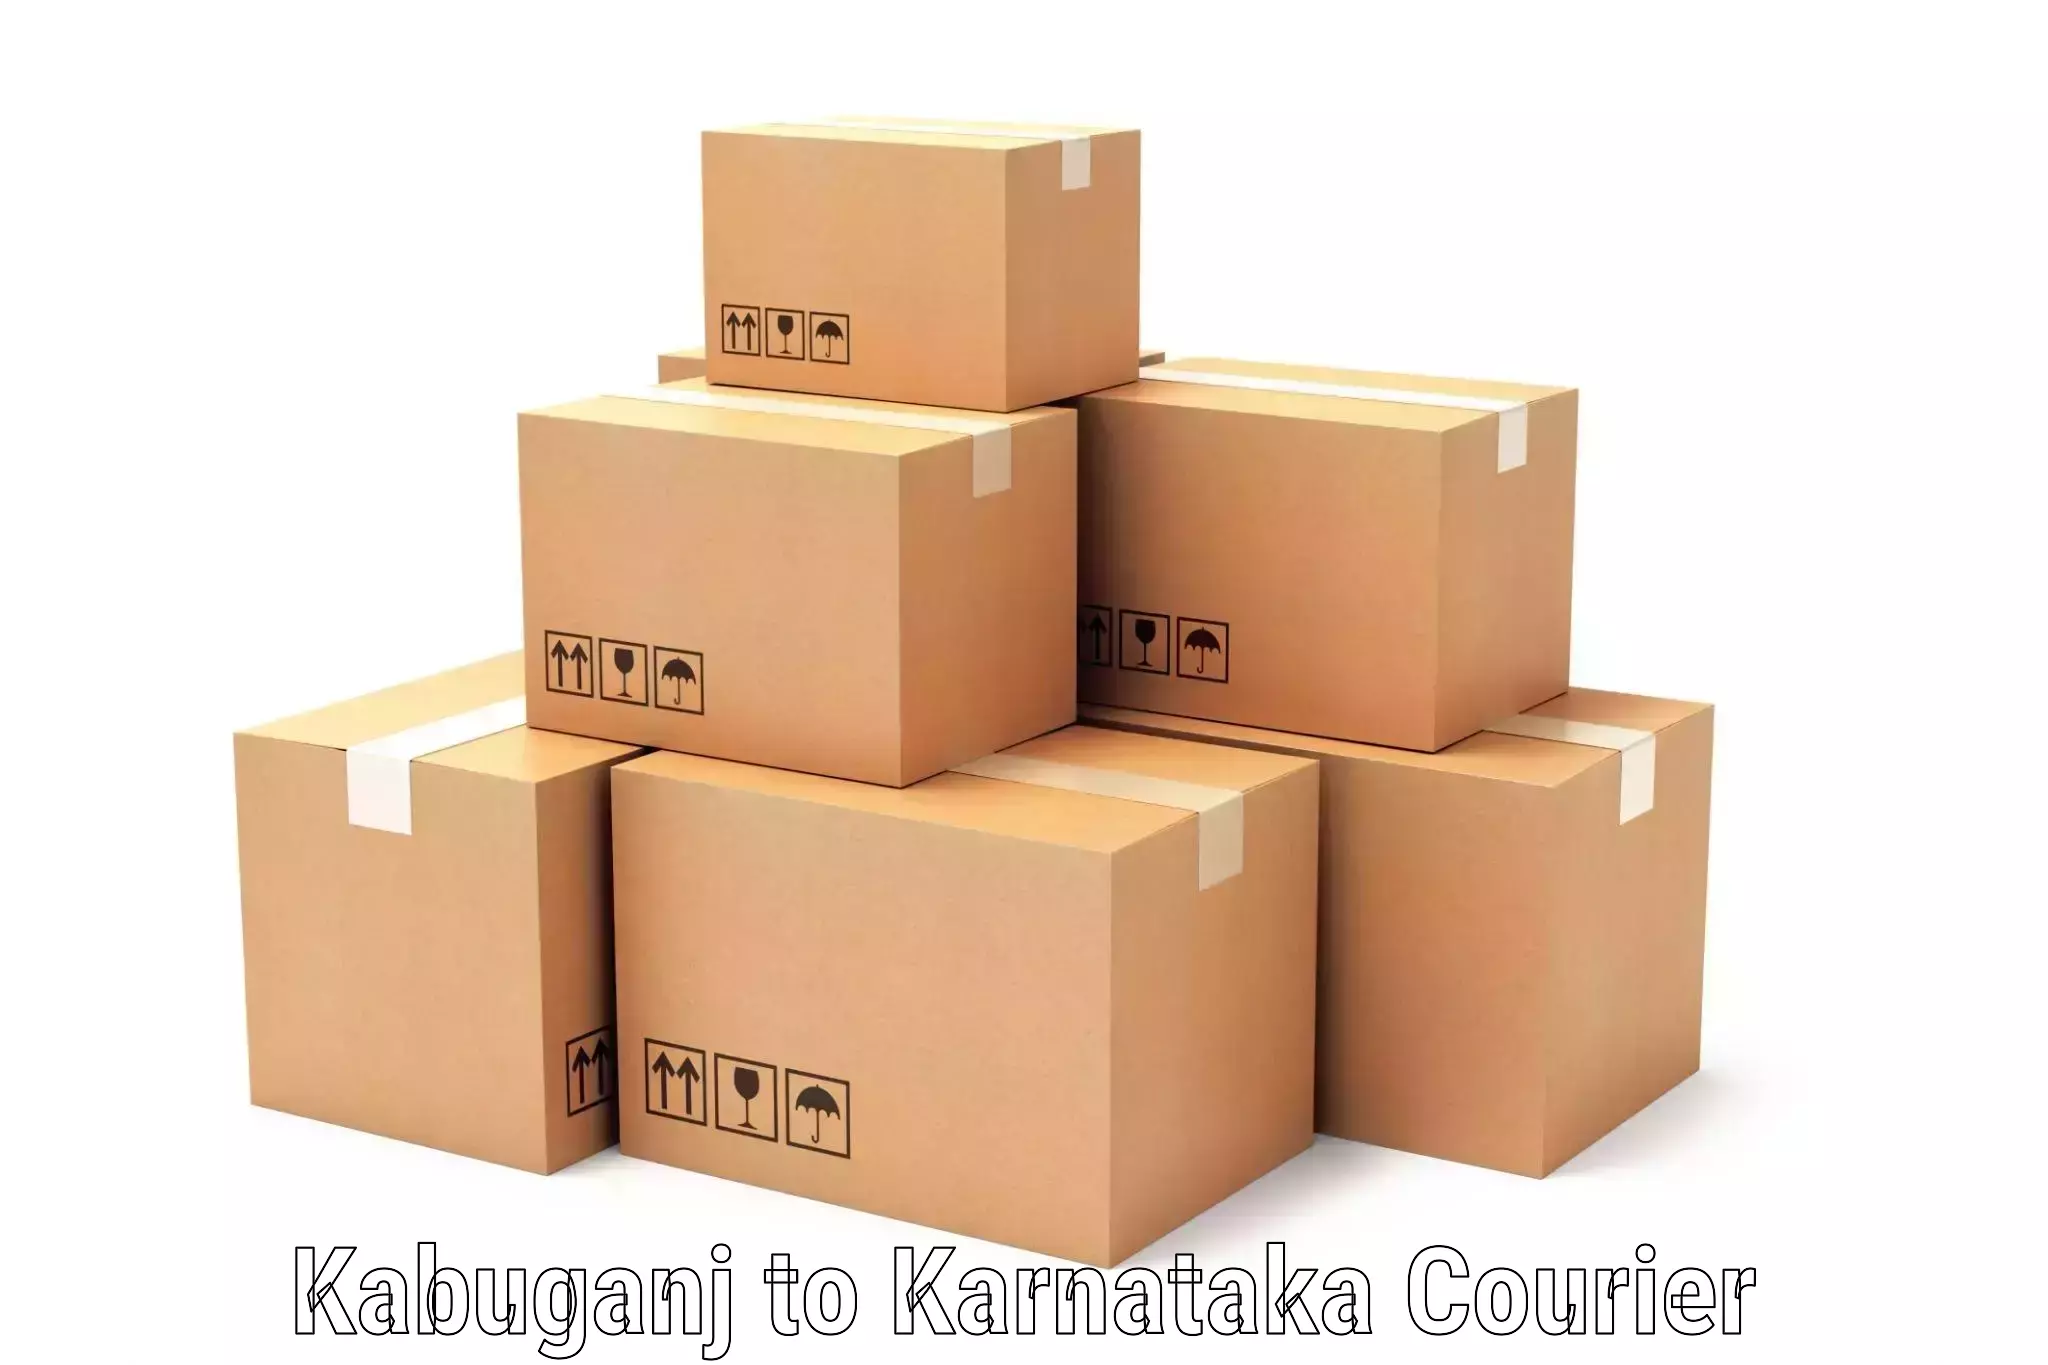 Quality courier partnerships Kabuganj to Karnataka